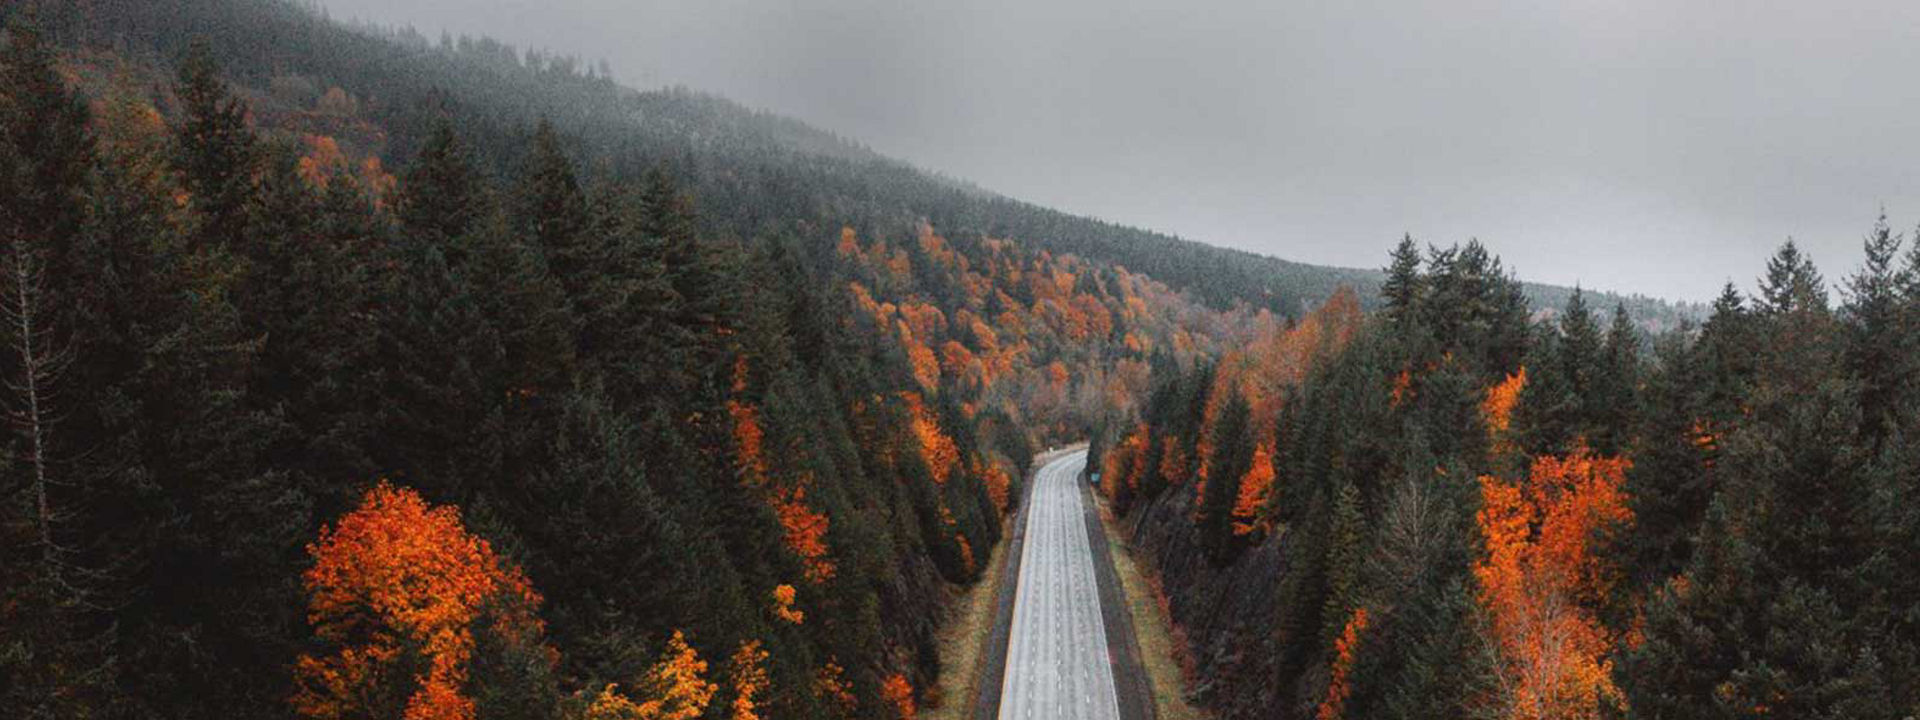 Esta imagen muestra una carretera vacía que atraviesa un bosque en otoño para demostrar que Weather Control es para todas las estaciones